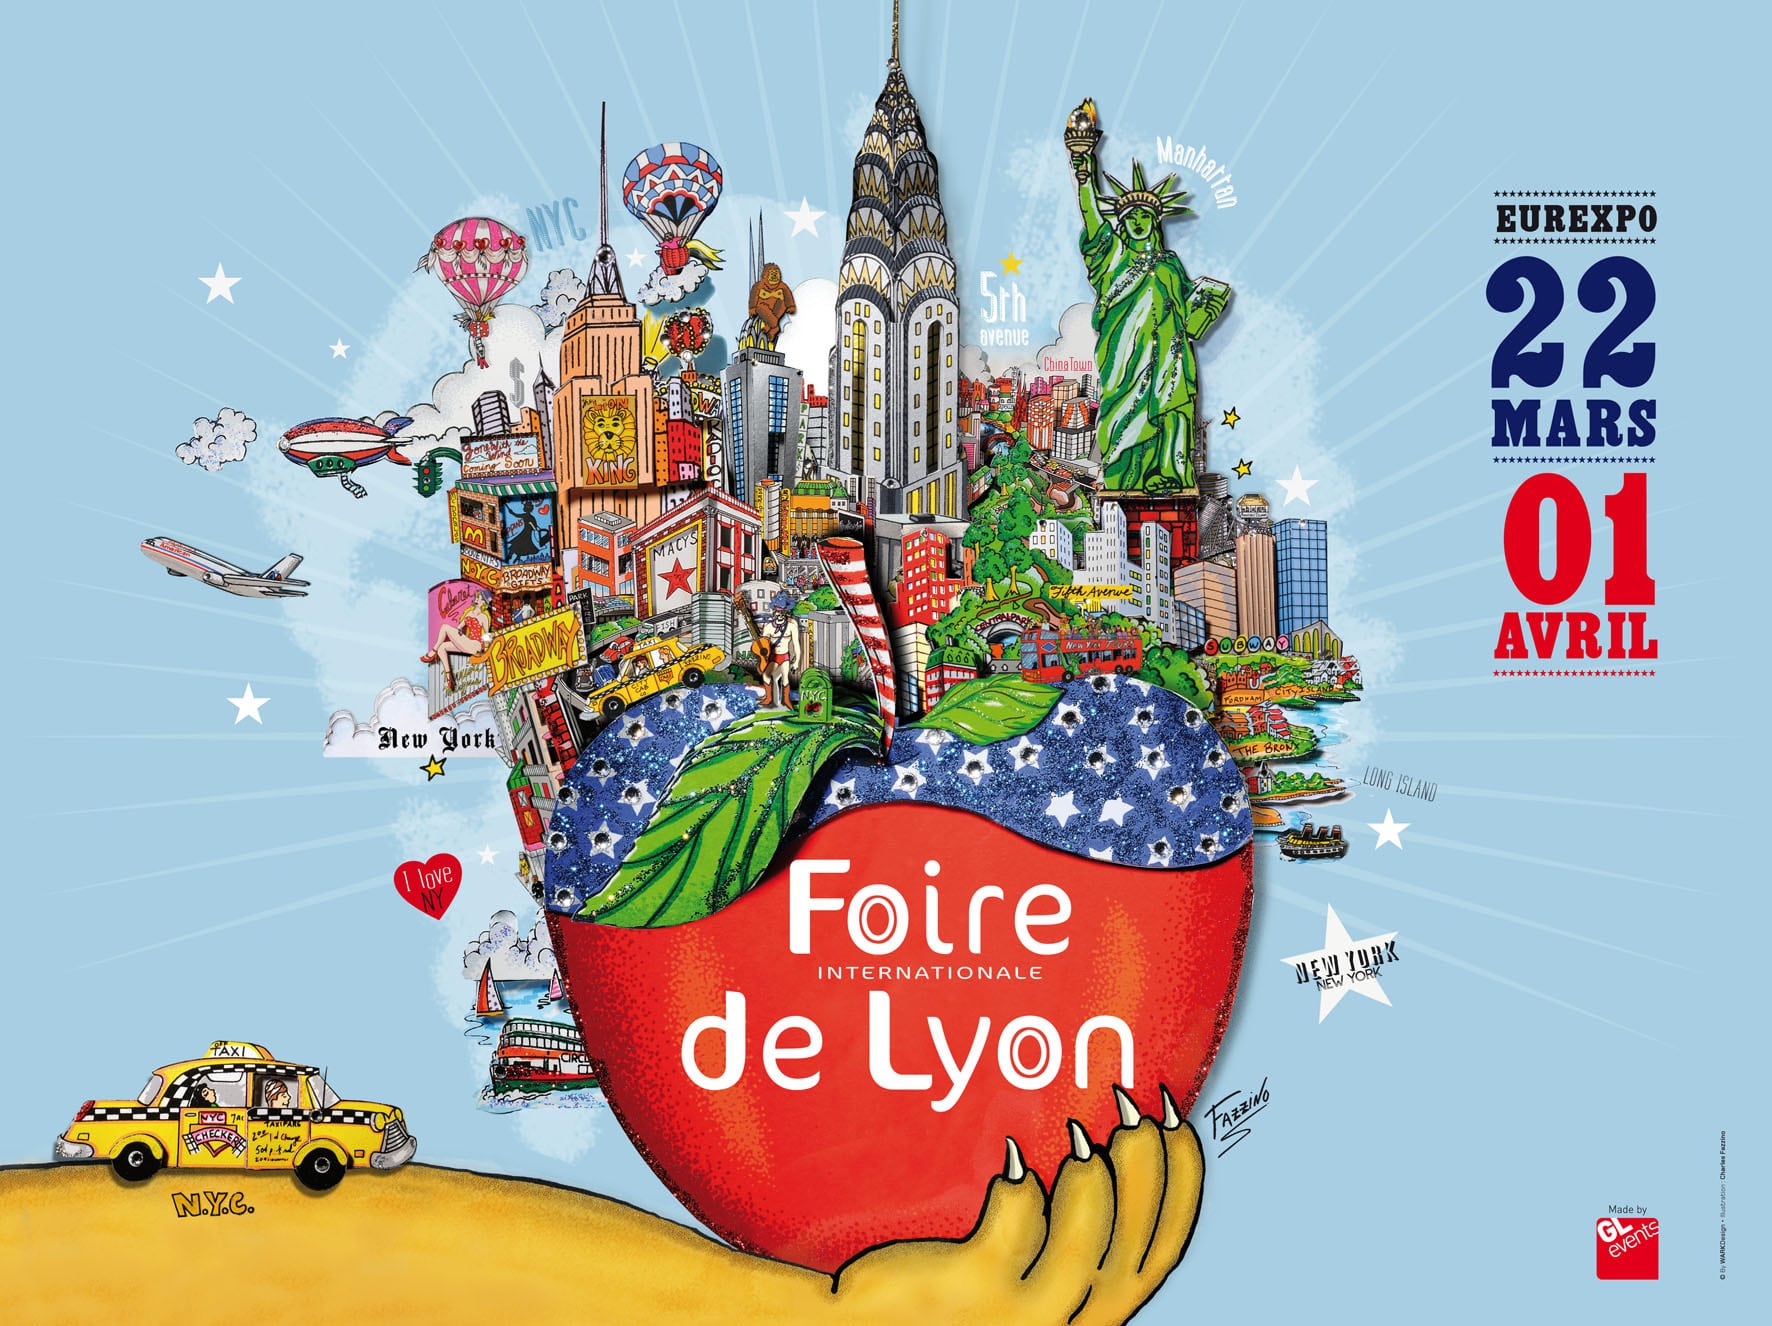 Ne manquez pas la Foire internationale de Lyon du 22 mars au 1er avril !